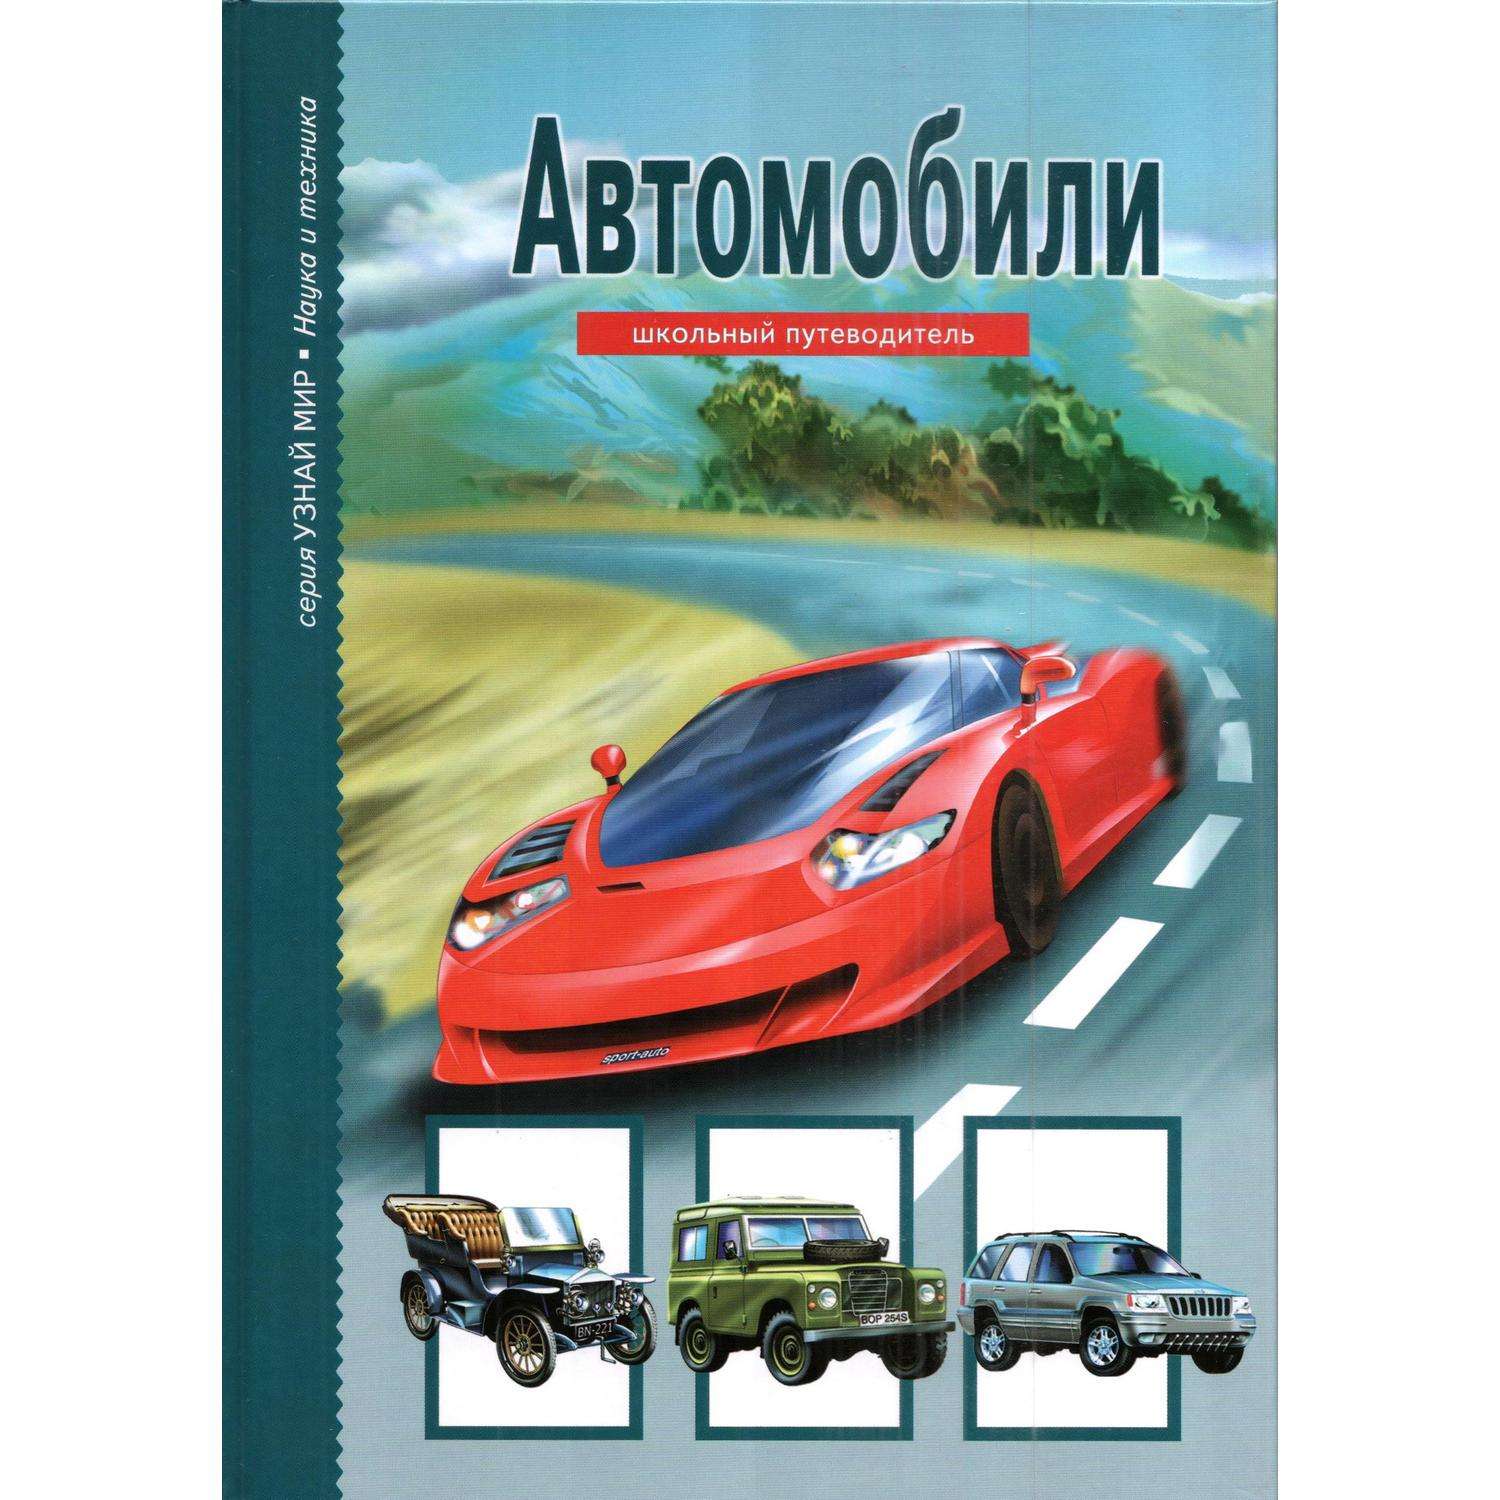 Книга Лада Автомобили Школьный путеводитель - фото 1